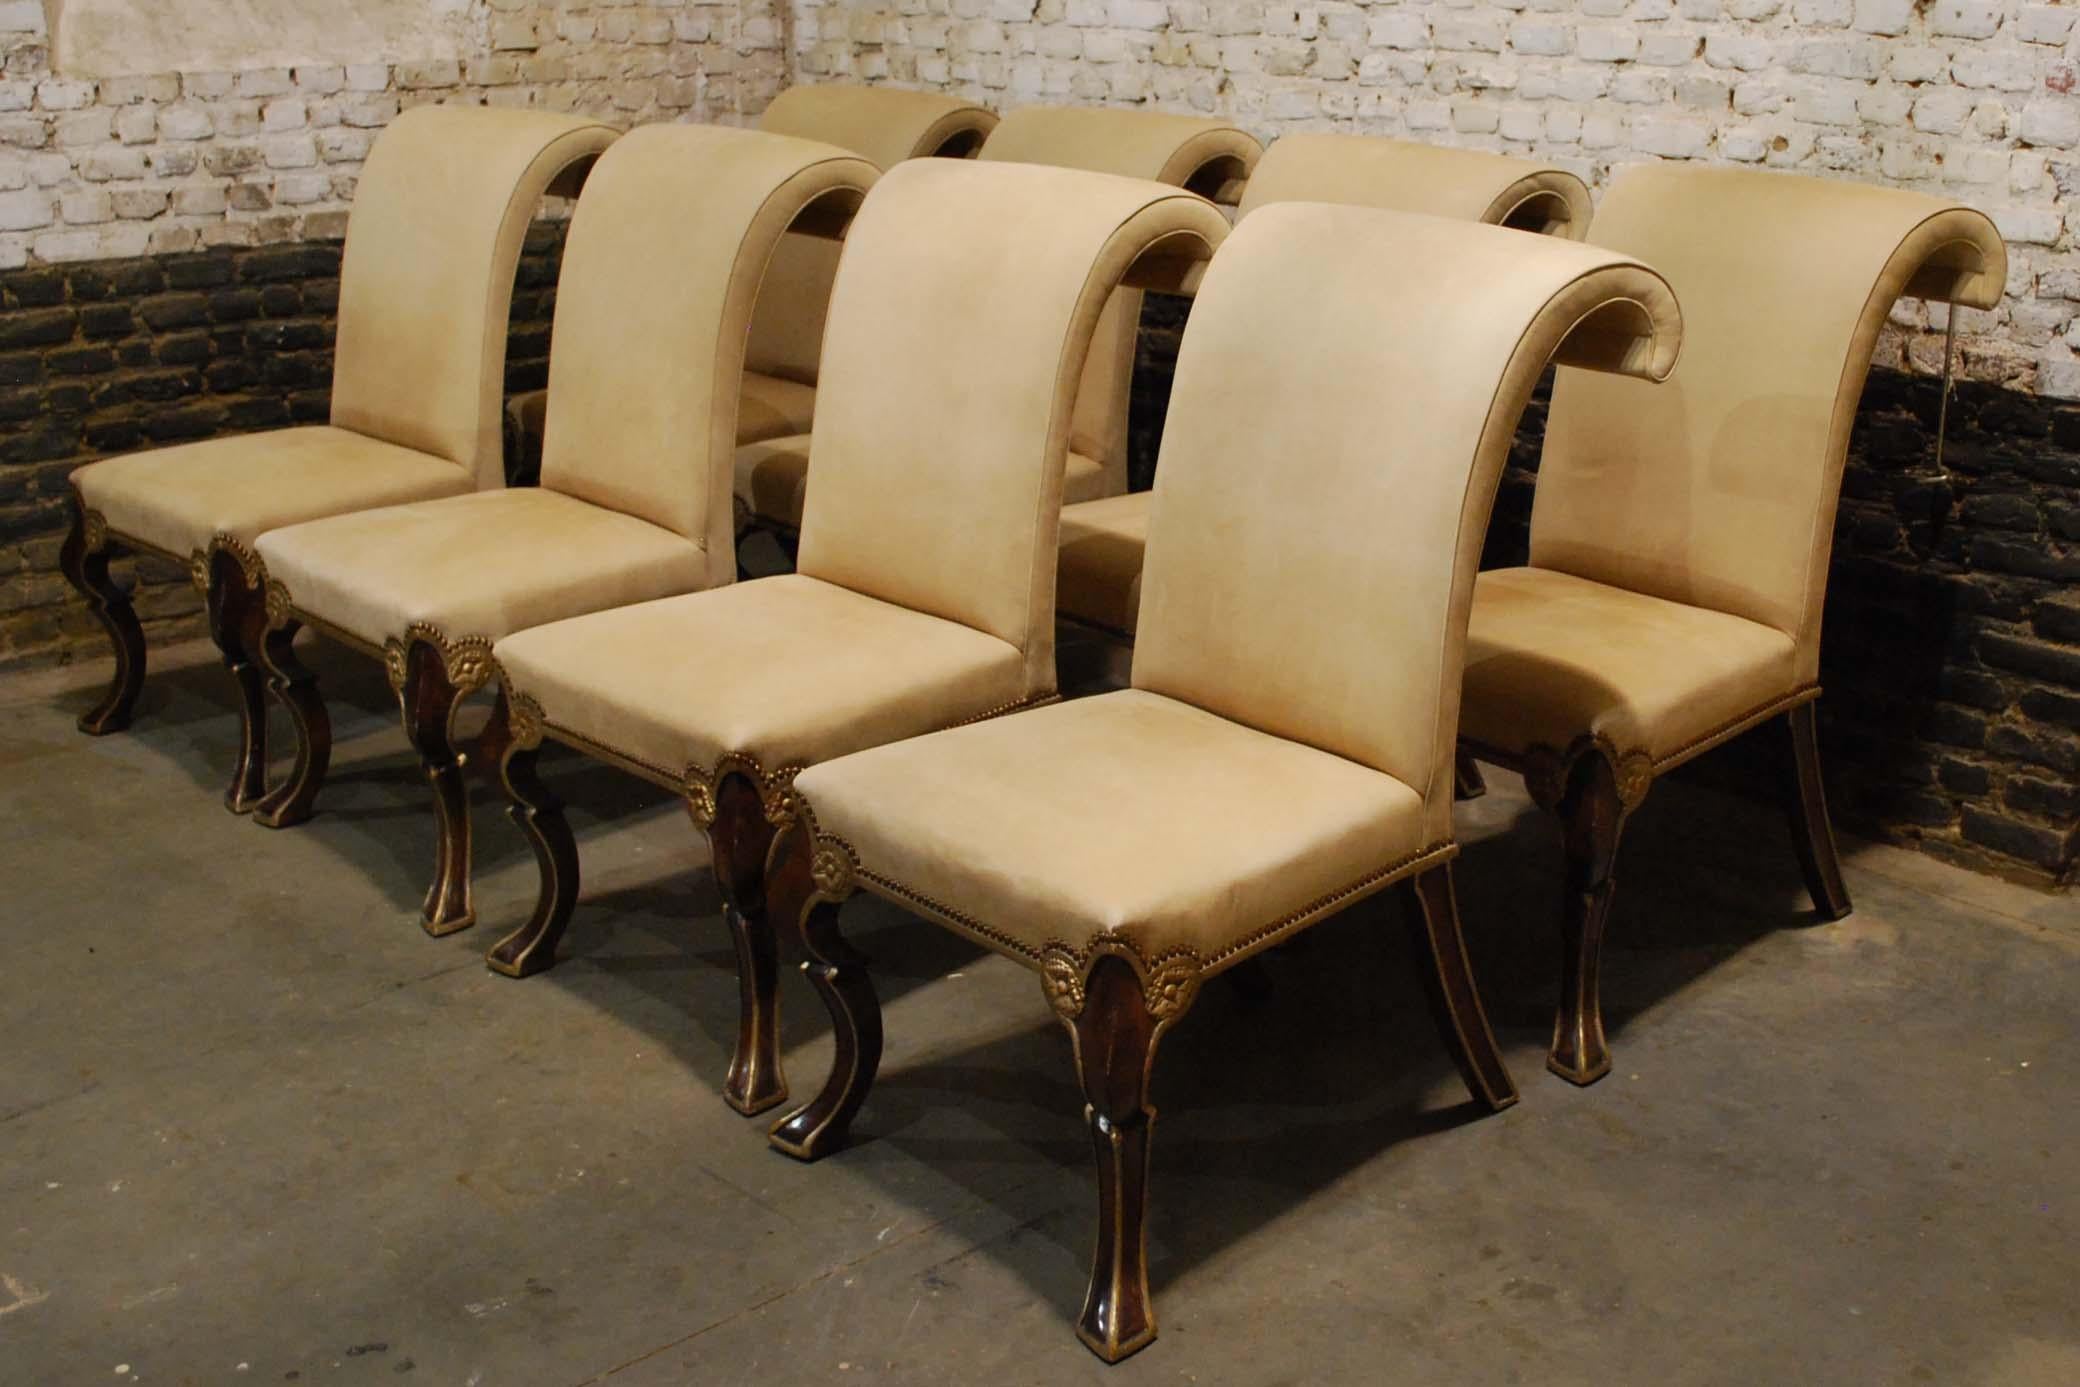 Un ensemble exclusif et important de huit chaises à manger Puccini faites à la main par Rose Tarlow Melrose House.
Les chaises sont dotées d'une assise et d'un dossier serrés, dans une finition peinte de couleur bordeaux, avec une garniture en or